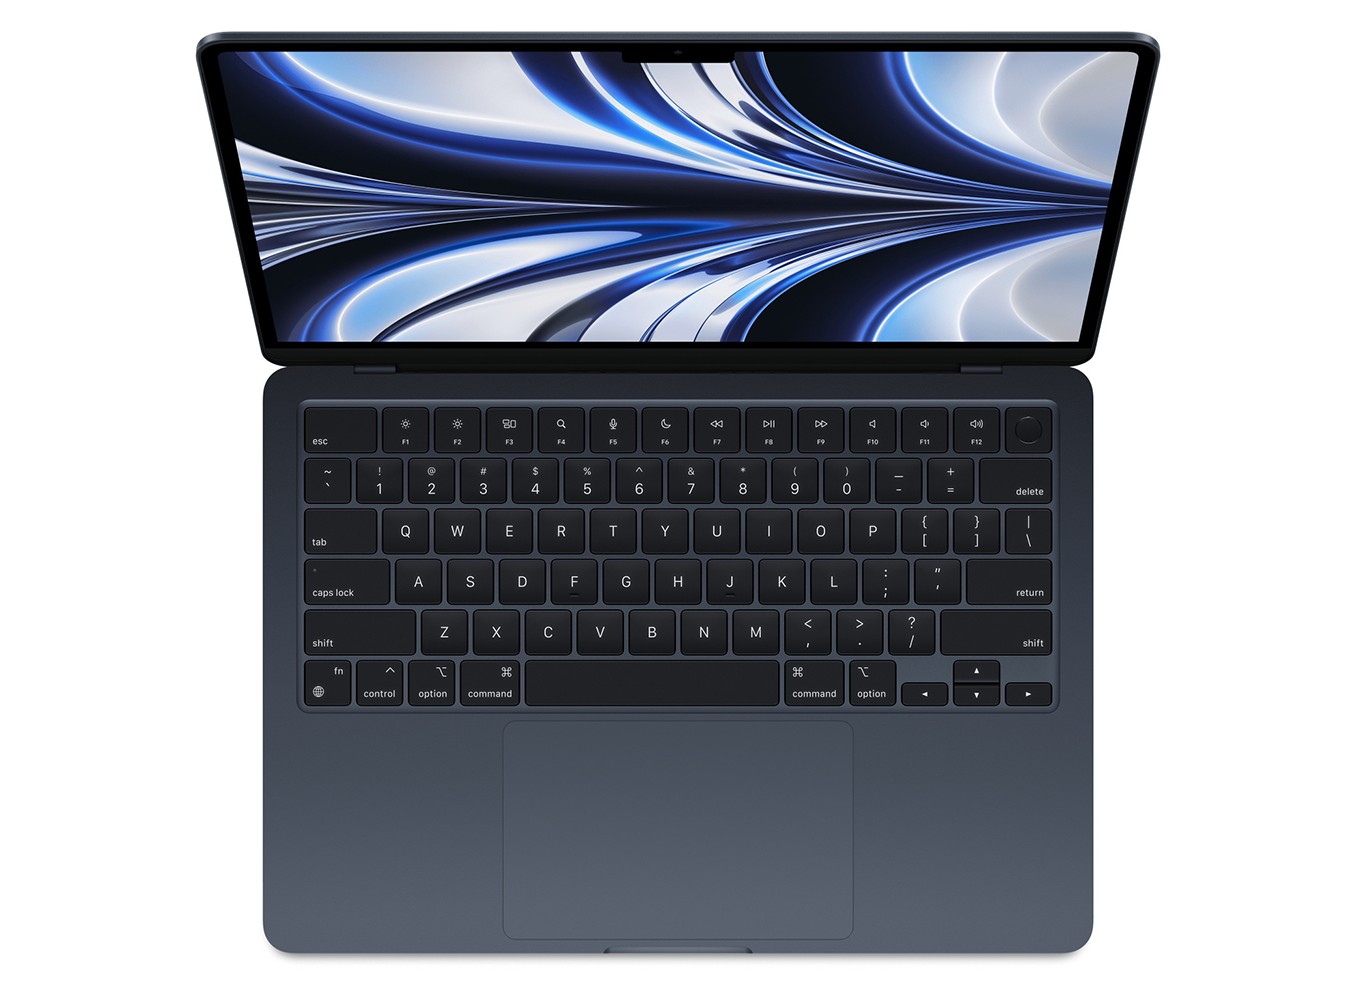 MacBook Air M2 GPU 8/24GB/256GB: MacBook Air M2 là dòng sản phẩm mới nhất của Apple, được trang bị cấu hình cực mạnh với GPU 8/24GB/256GB. Với thiết kế tuyệt đẹp, màn hình Retina sắc nét và tính năng hiện đại, MacBook Air M2 là sự lựa chọn hàng đầu cho những người yêu thích công nghệ và đang tìm kiếm một chiếc laptop để phục vụ cho các nhu cầu công việc và giải trí của mình.